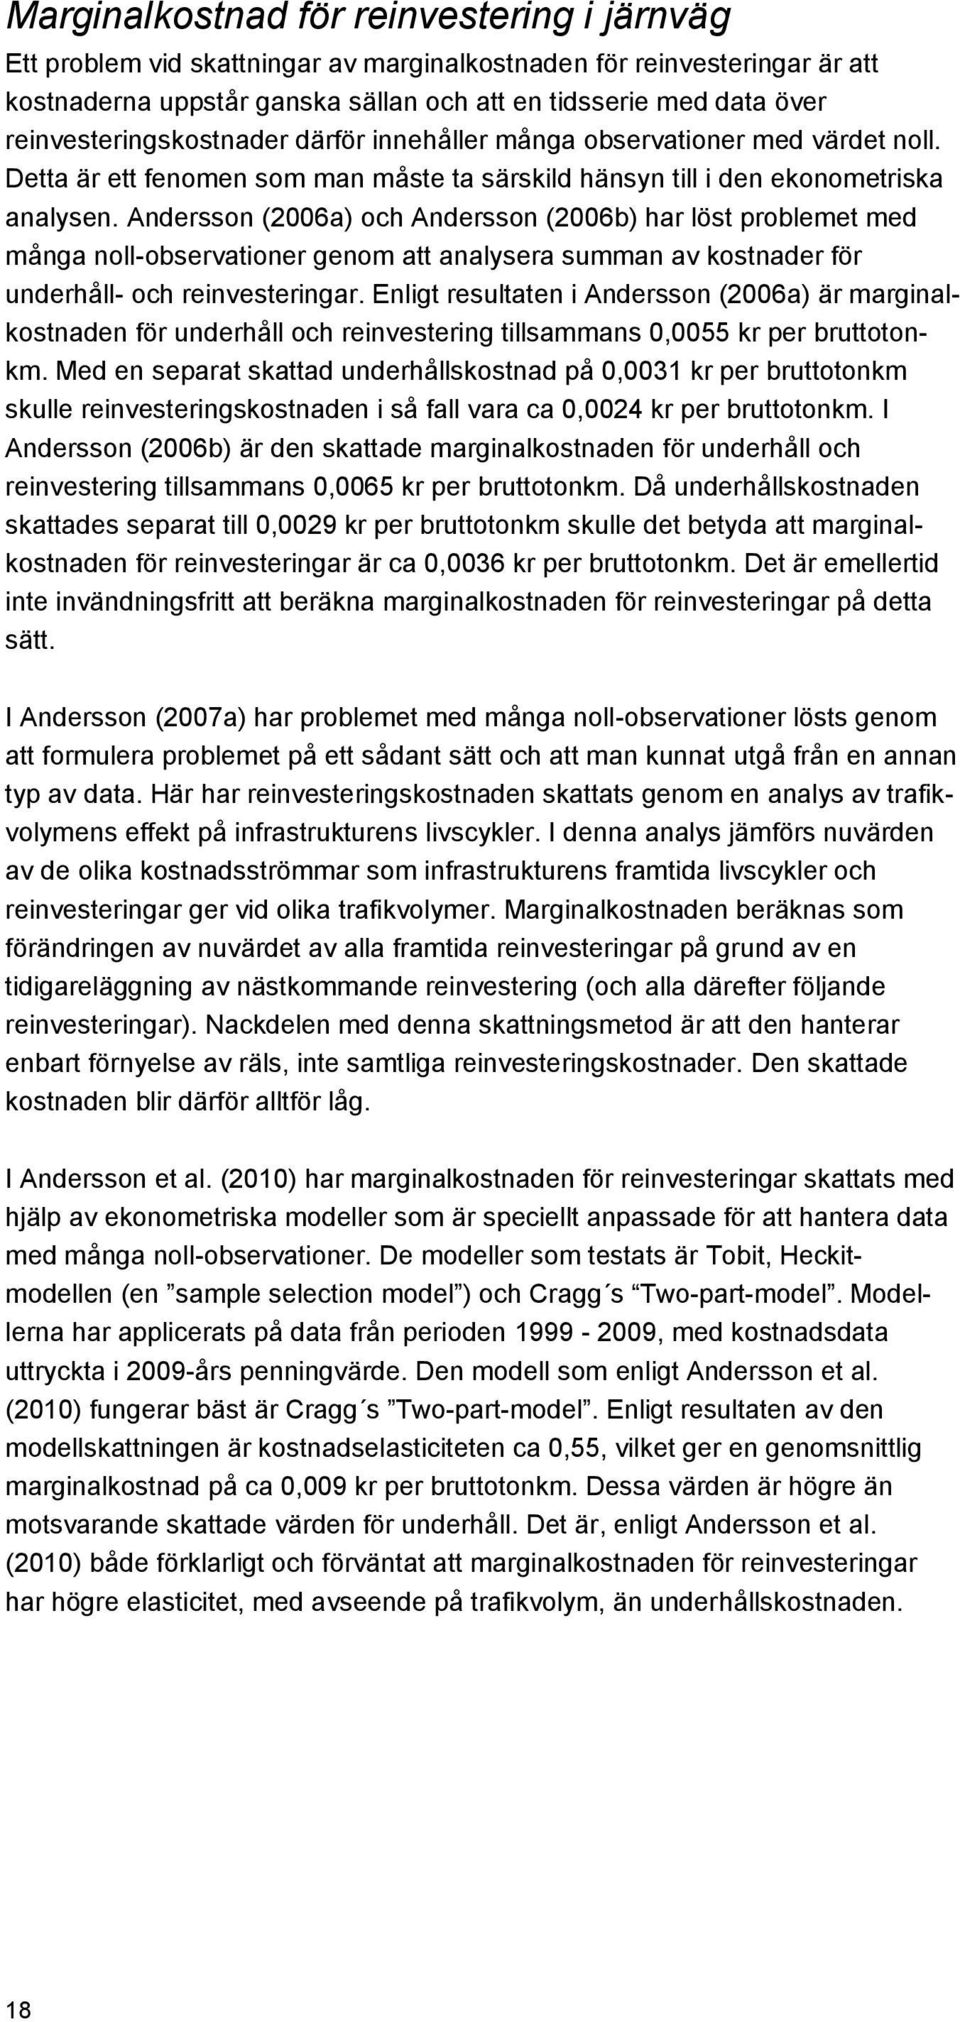 Andersson (2006a) och Andersson (2006b) har löst problemet med många noll-observationer genom att analysera summan av kostnader för underhåll- och reinvesteringar.